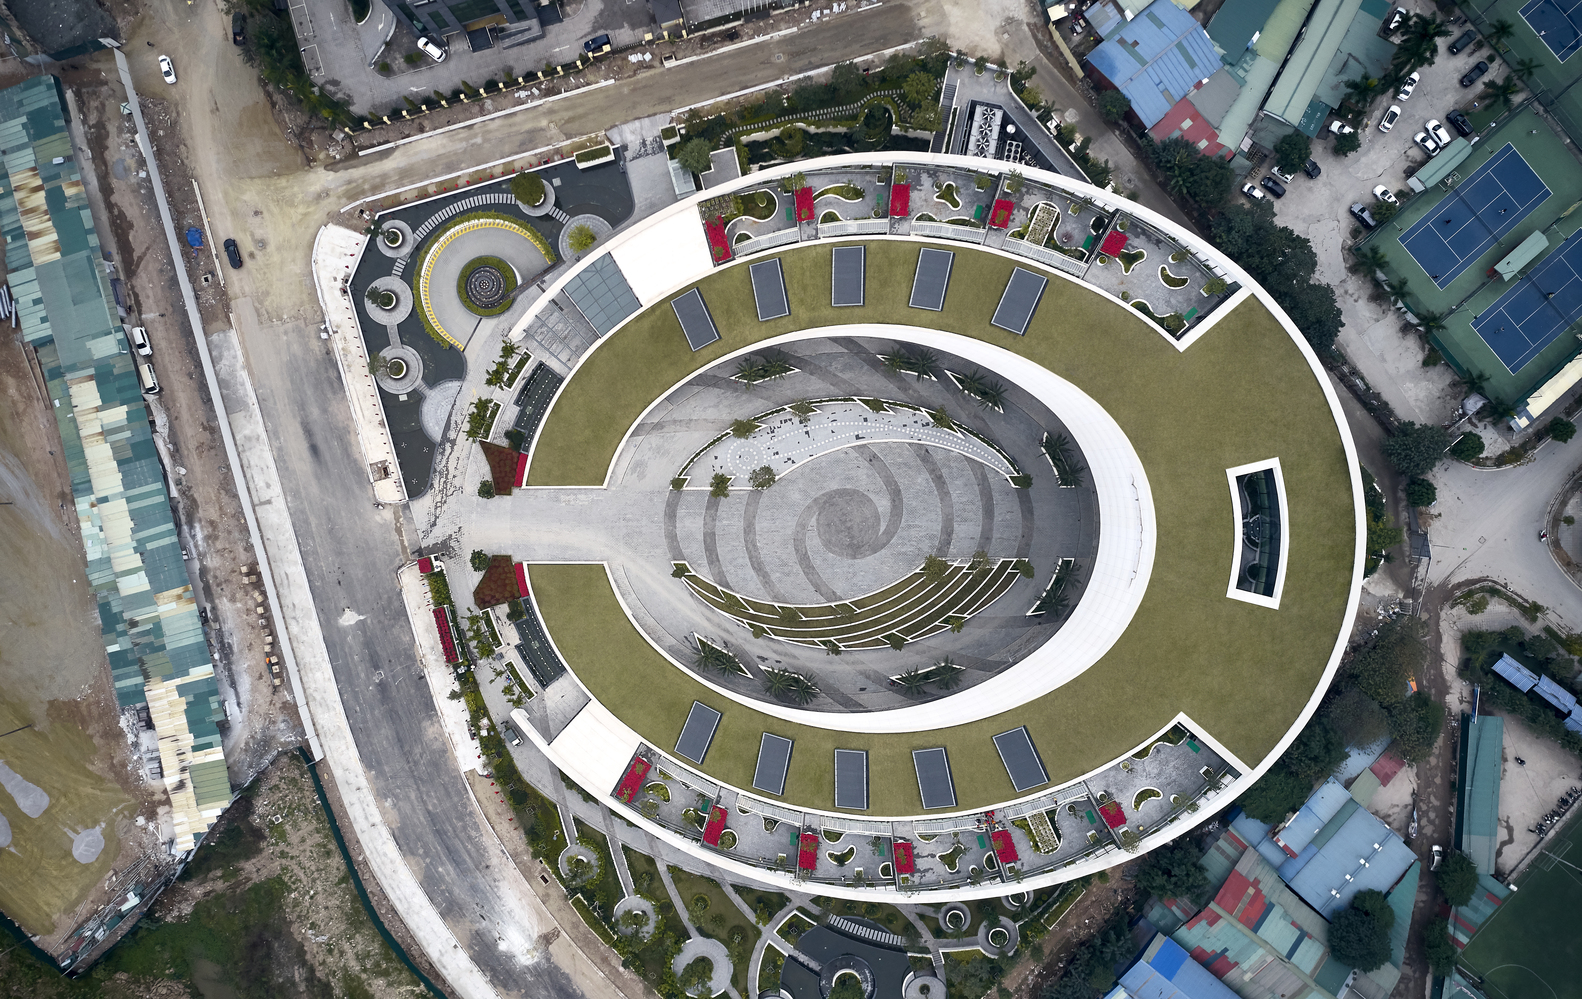 hình ảnh trụ sở chính của Viettel ở Hà Nội nhìn từ trên cao với mái dốc trồng cỏ xanh mướt